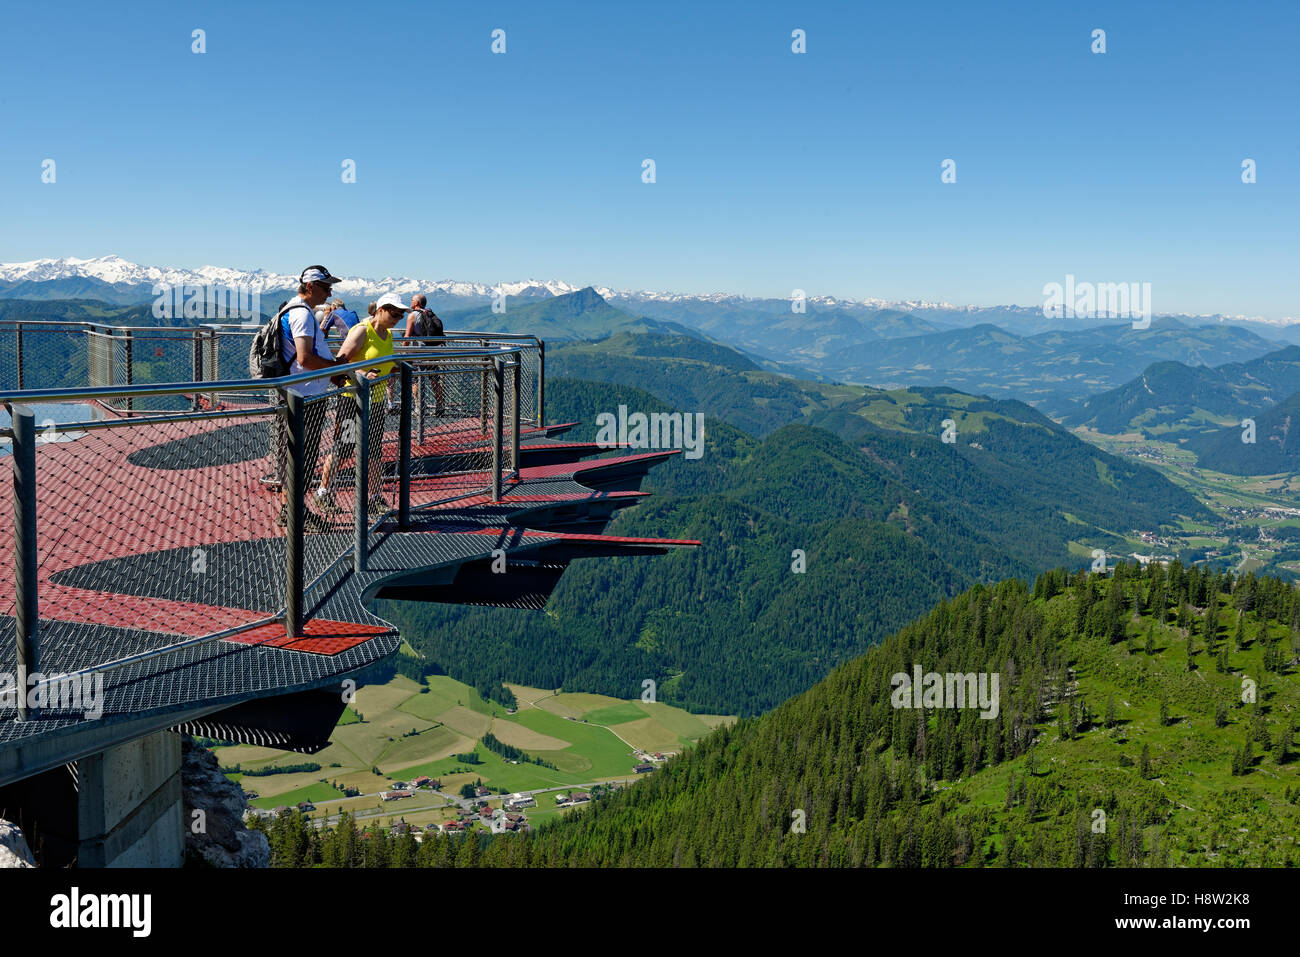 Les touristes à la recherche sur le bord de la plate-forme panoramique, Triassic Park, près de Steinplatte Waidring,, Tyrol, Autriche Banque D'Images